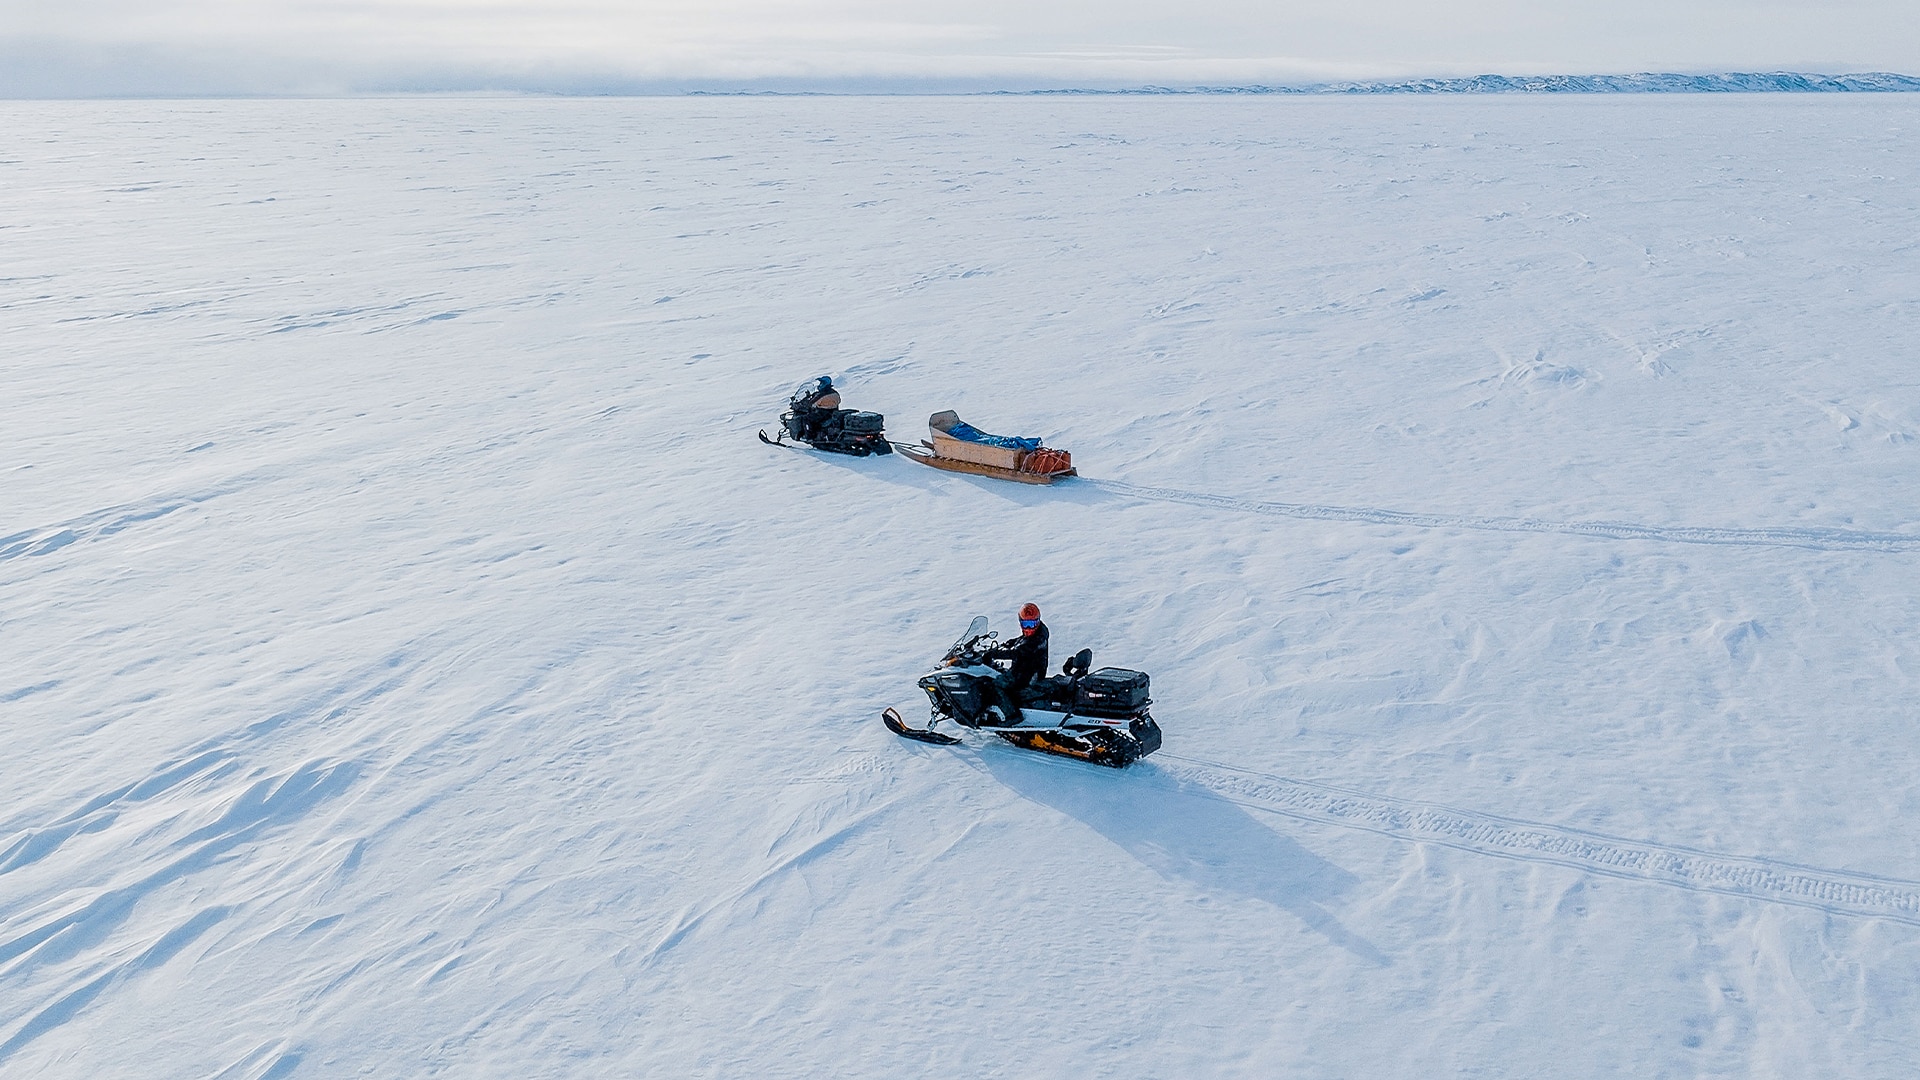 To Ski-Doo-snøscootere på tur i Nunavut